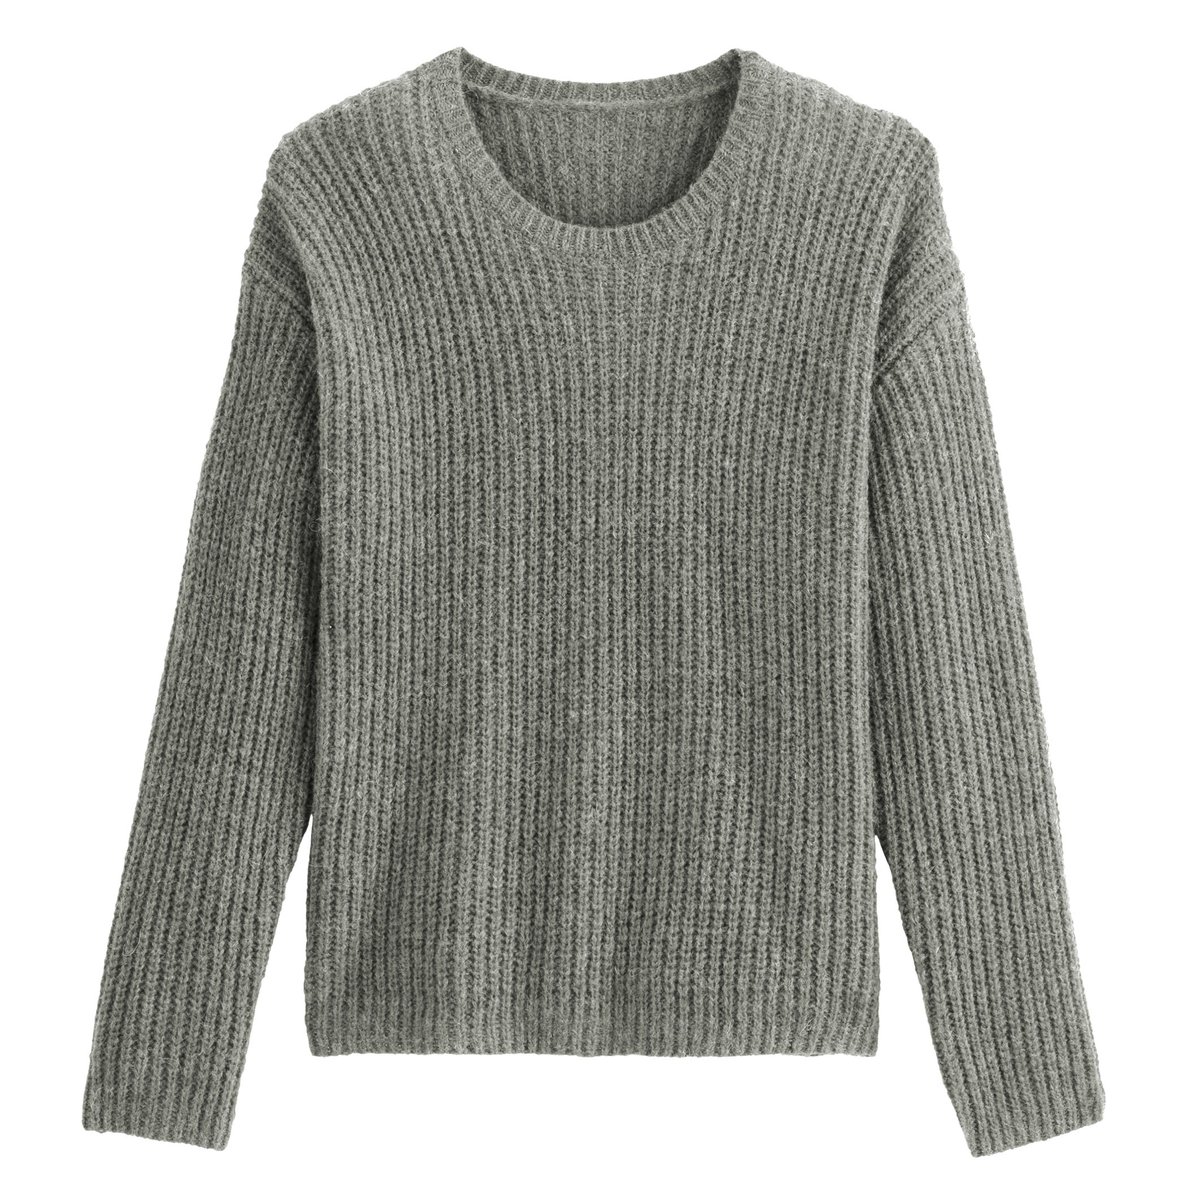 Пуловер La Redoute С воротником-стойка S серый, размер S - фото 5